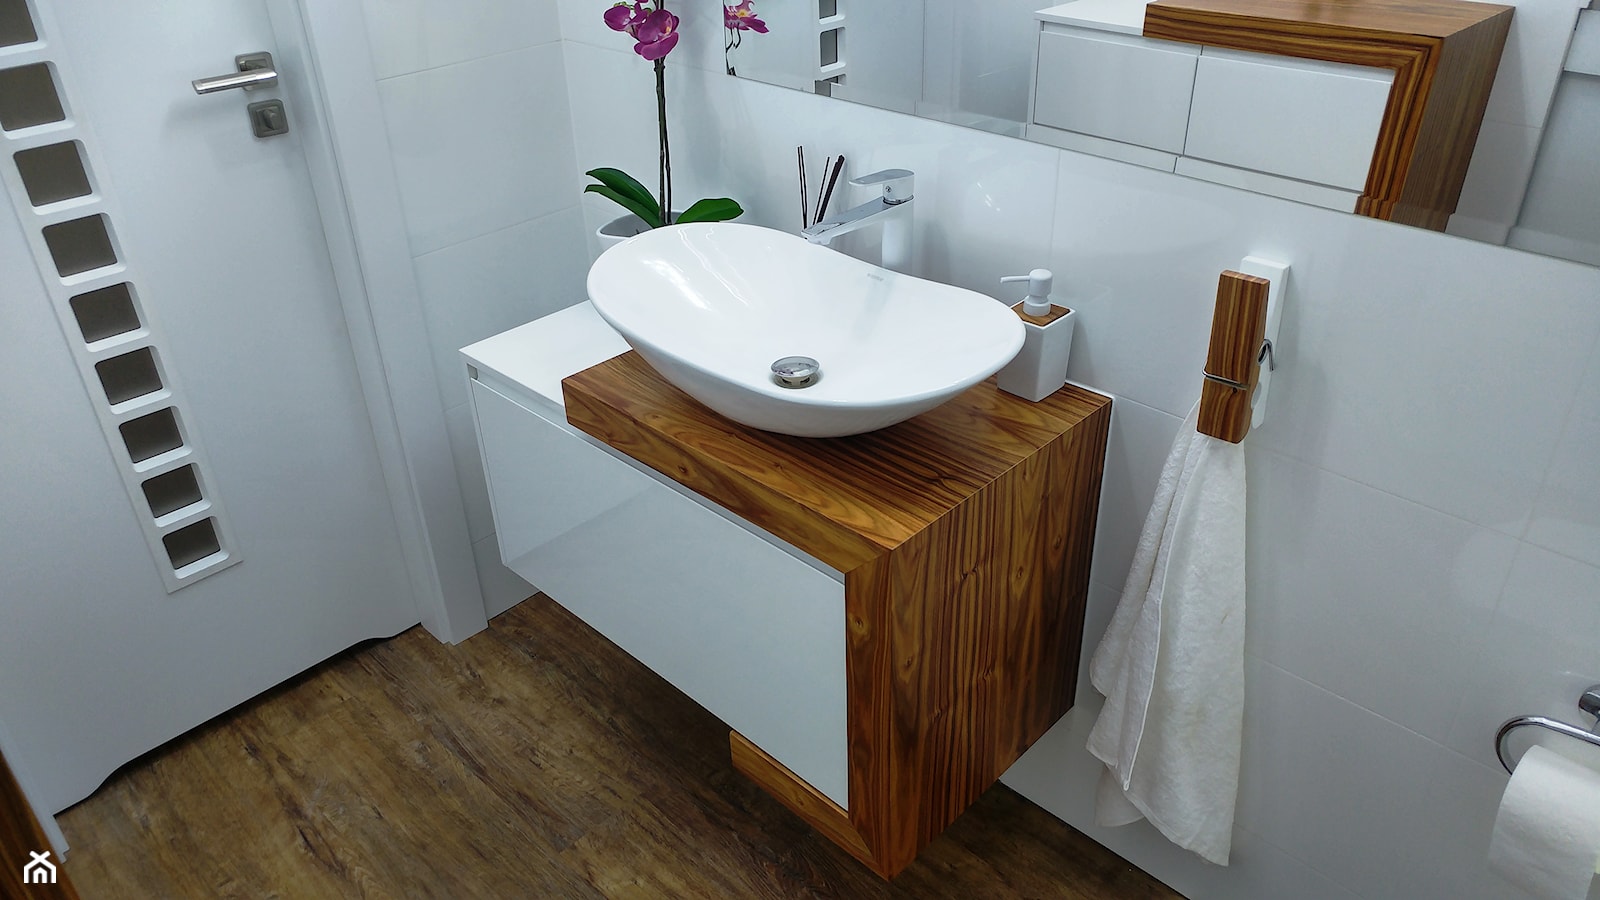 łazienka AMMERS - Mała średnia łazienka, styl nowoczesny - zdjęcie od Blindexmeble - Homebook